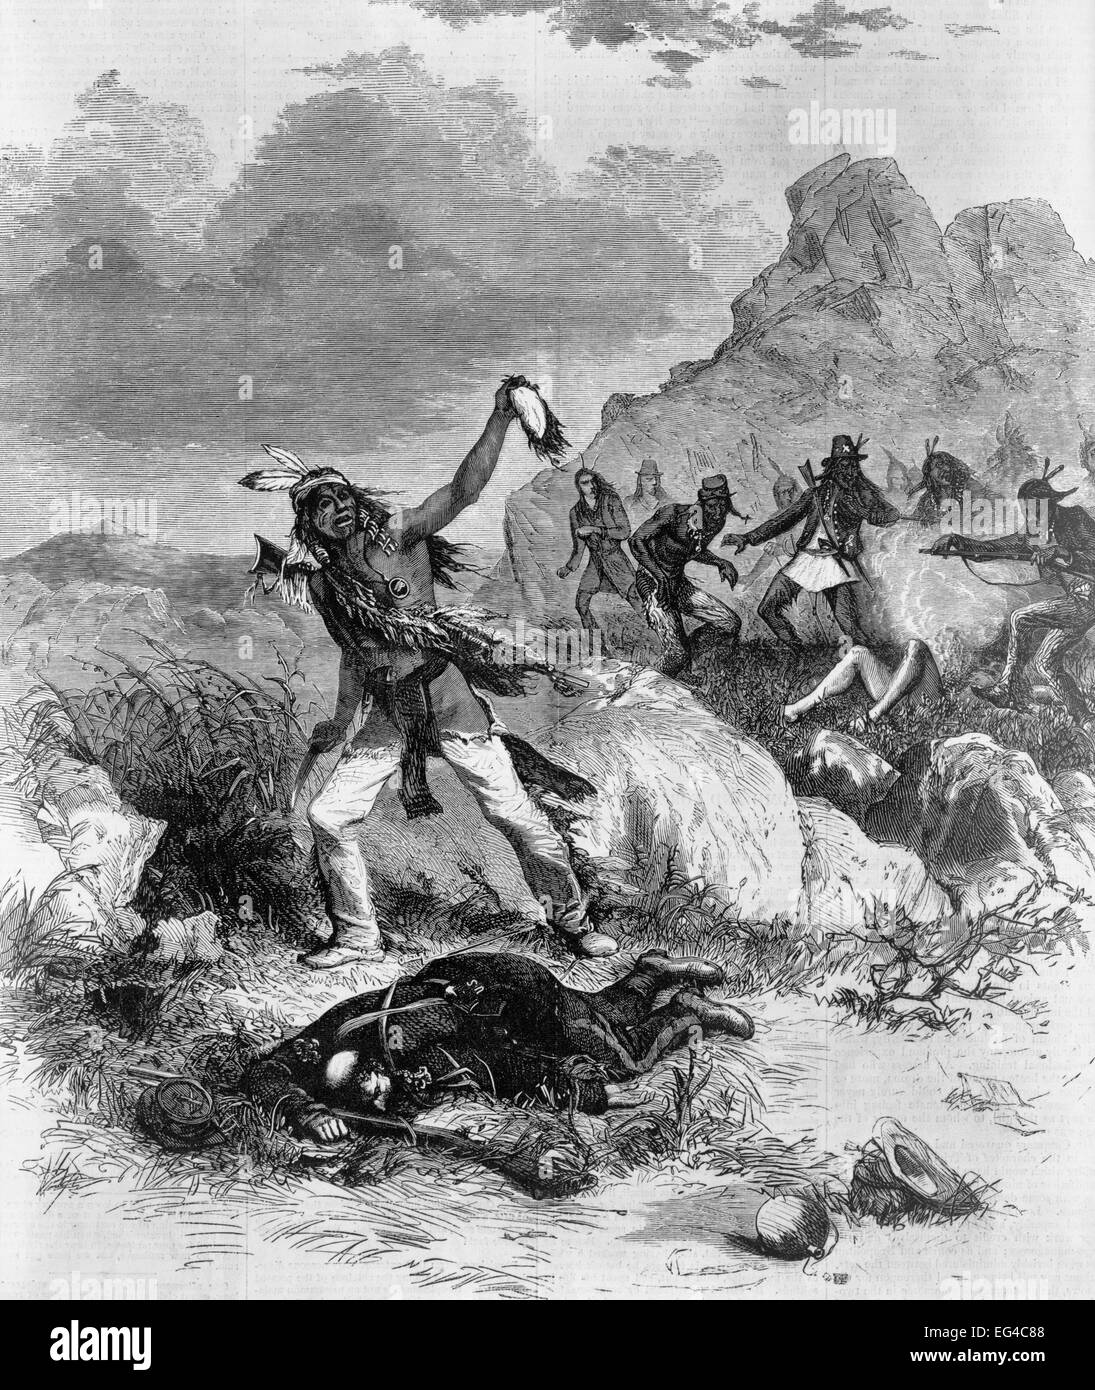 Modocs scalping und foltern Gefangene - Illustration zeigt ein Modoc-Indianer halten auf der Kopfhaut eines toten Soldaten, die zu seinen Füßen liegen; im Hintergrund stehen andere Modocs in der Nähe der Leiche eines anderen Soldaten, ca. 1873 Stockfoto